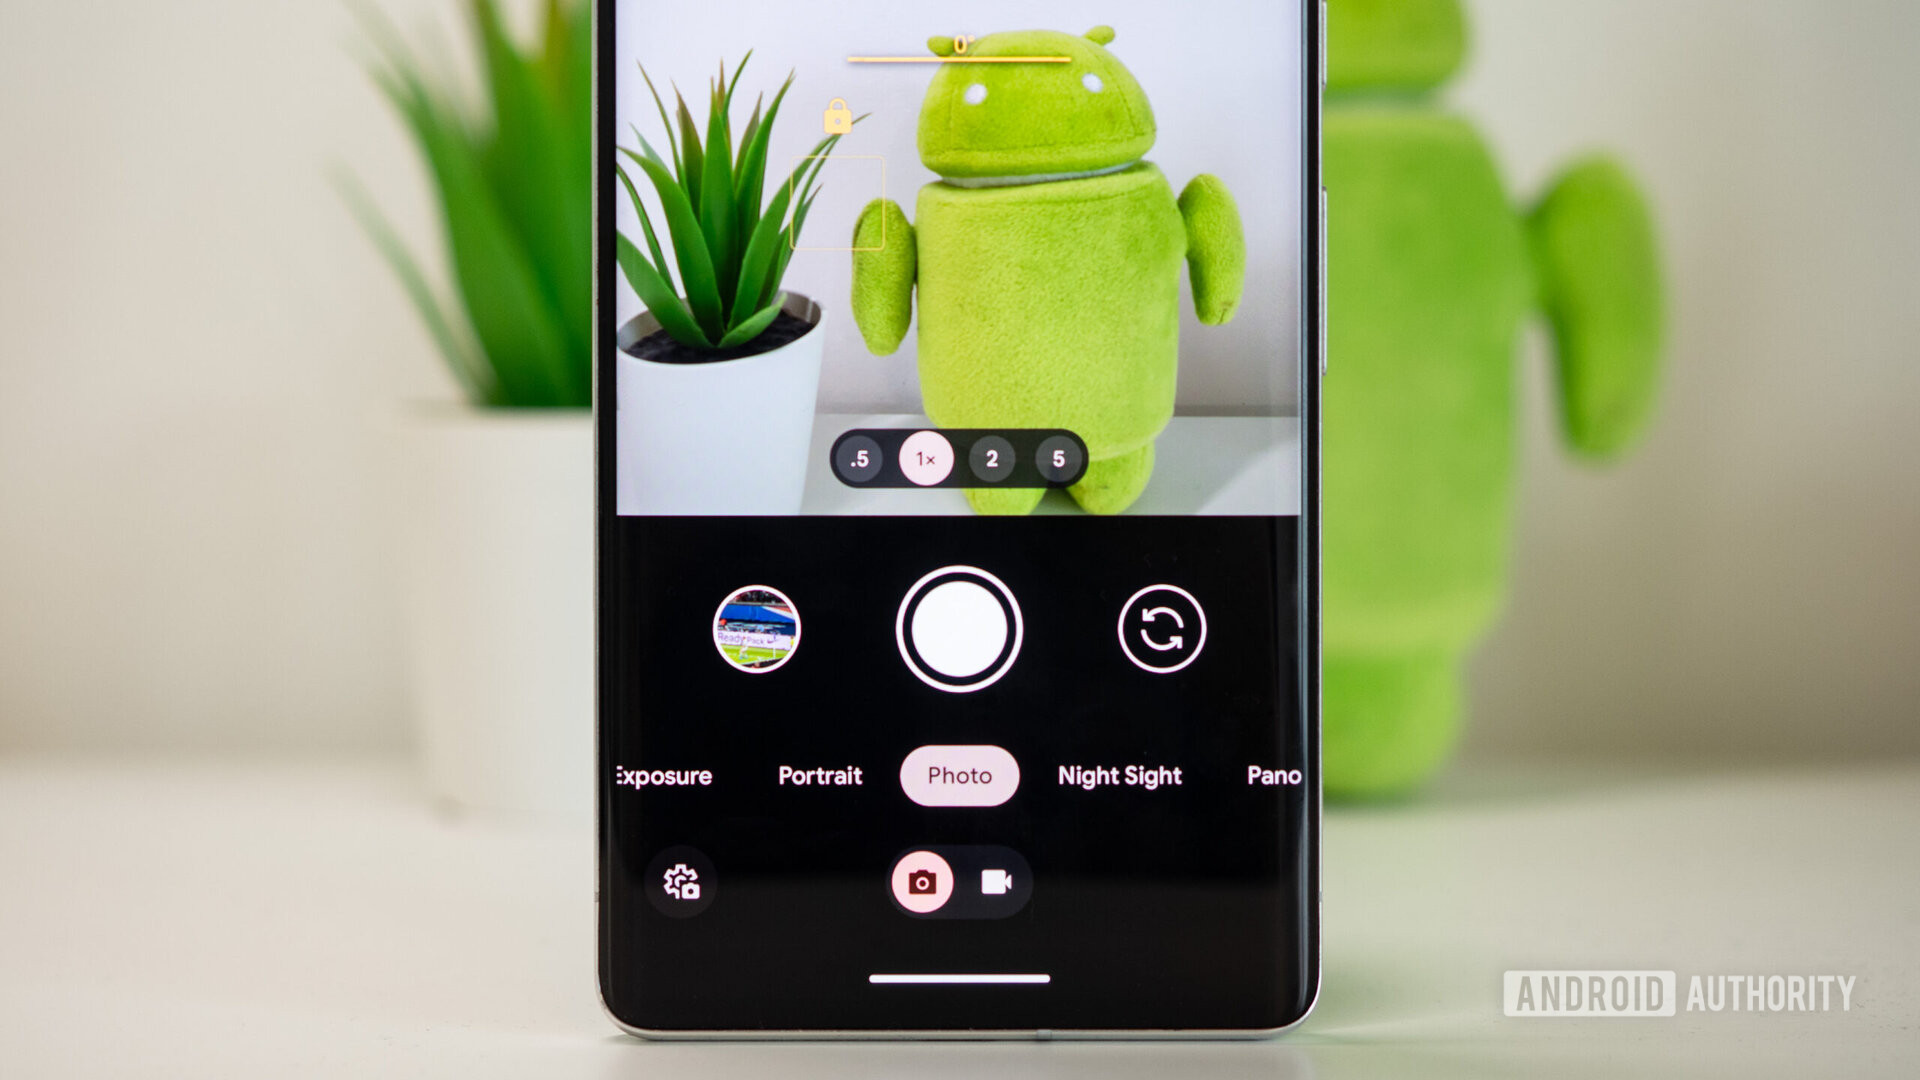 Los teléfonos Google Pixel recientes tienen un extraño error en la cámara